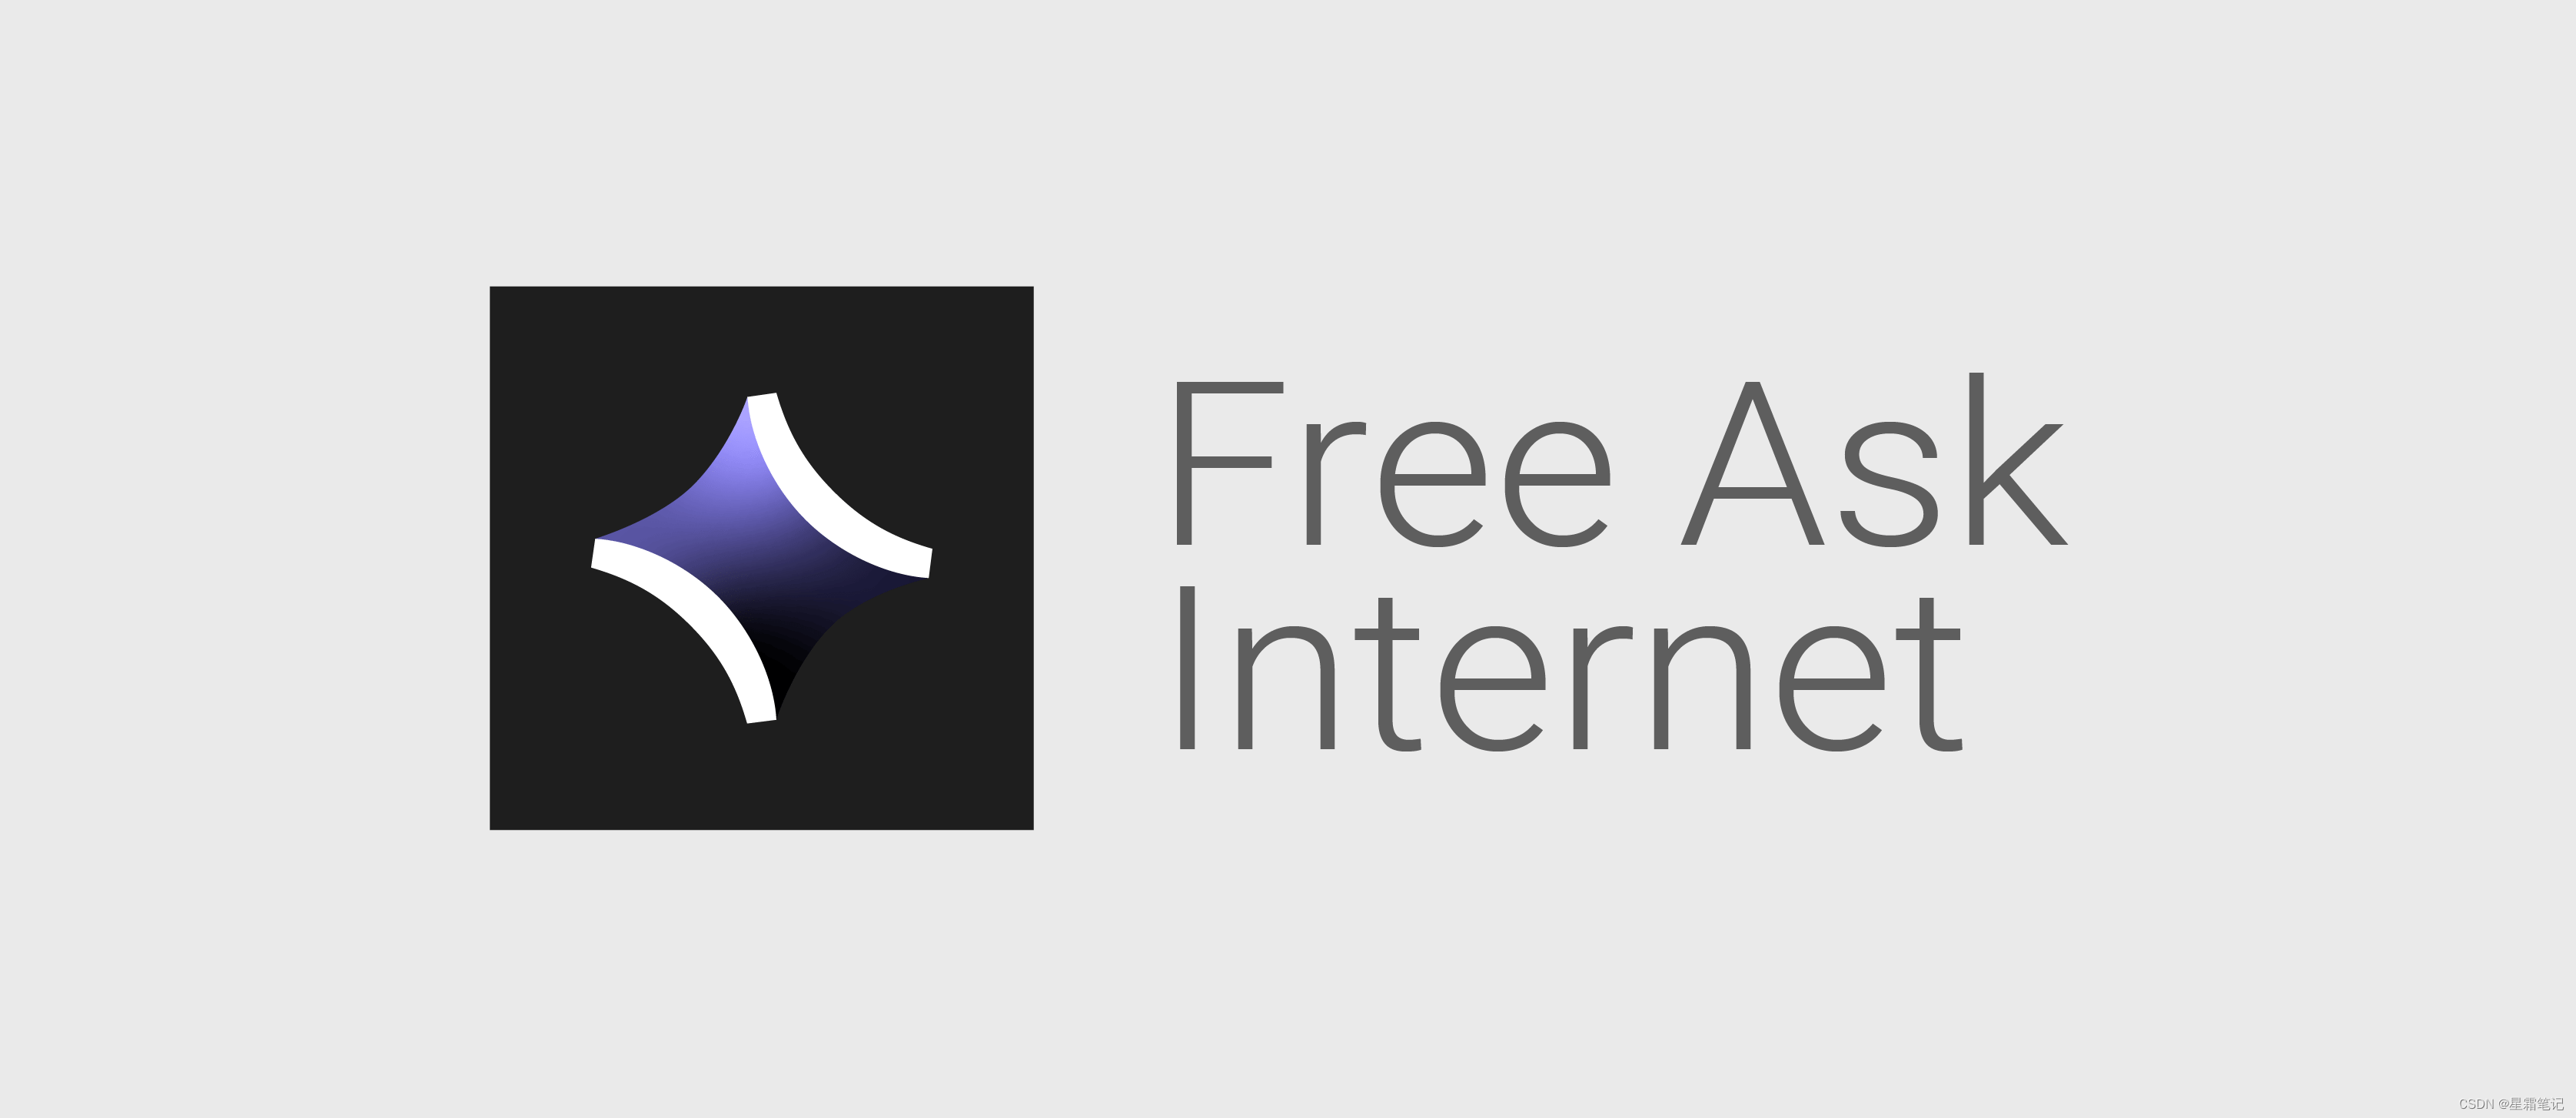 一个完全免费、私有且本地运行的搜索聚合器-FreeAskInternet